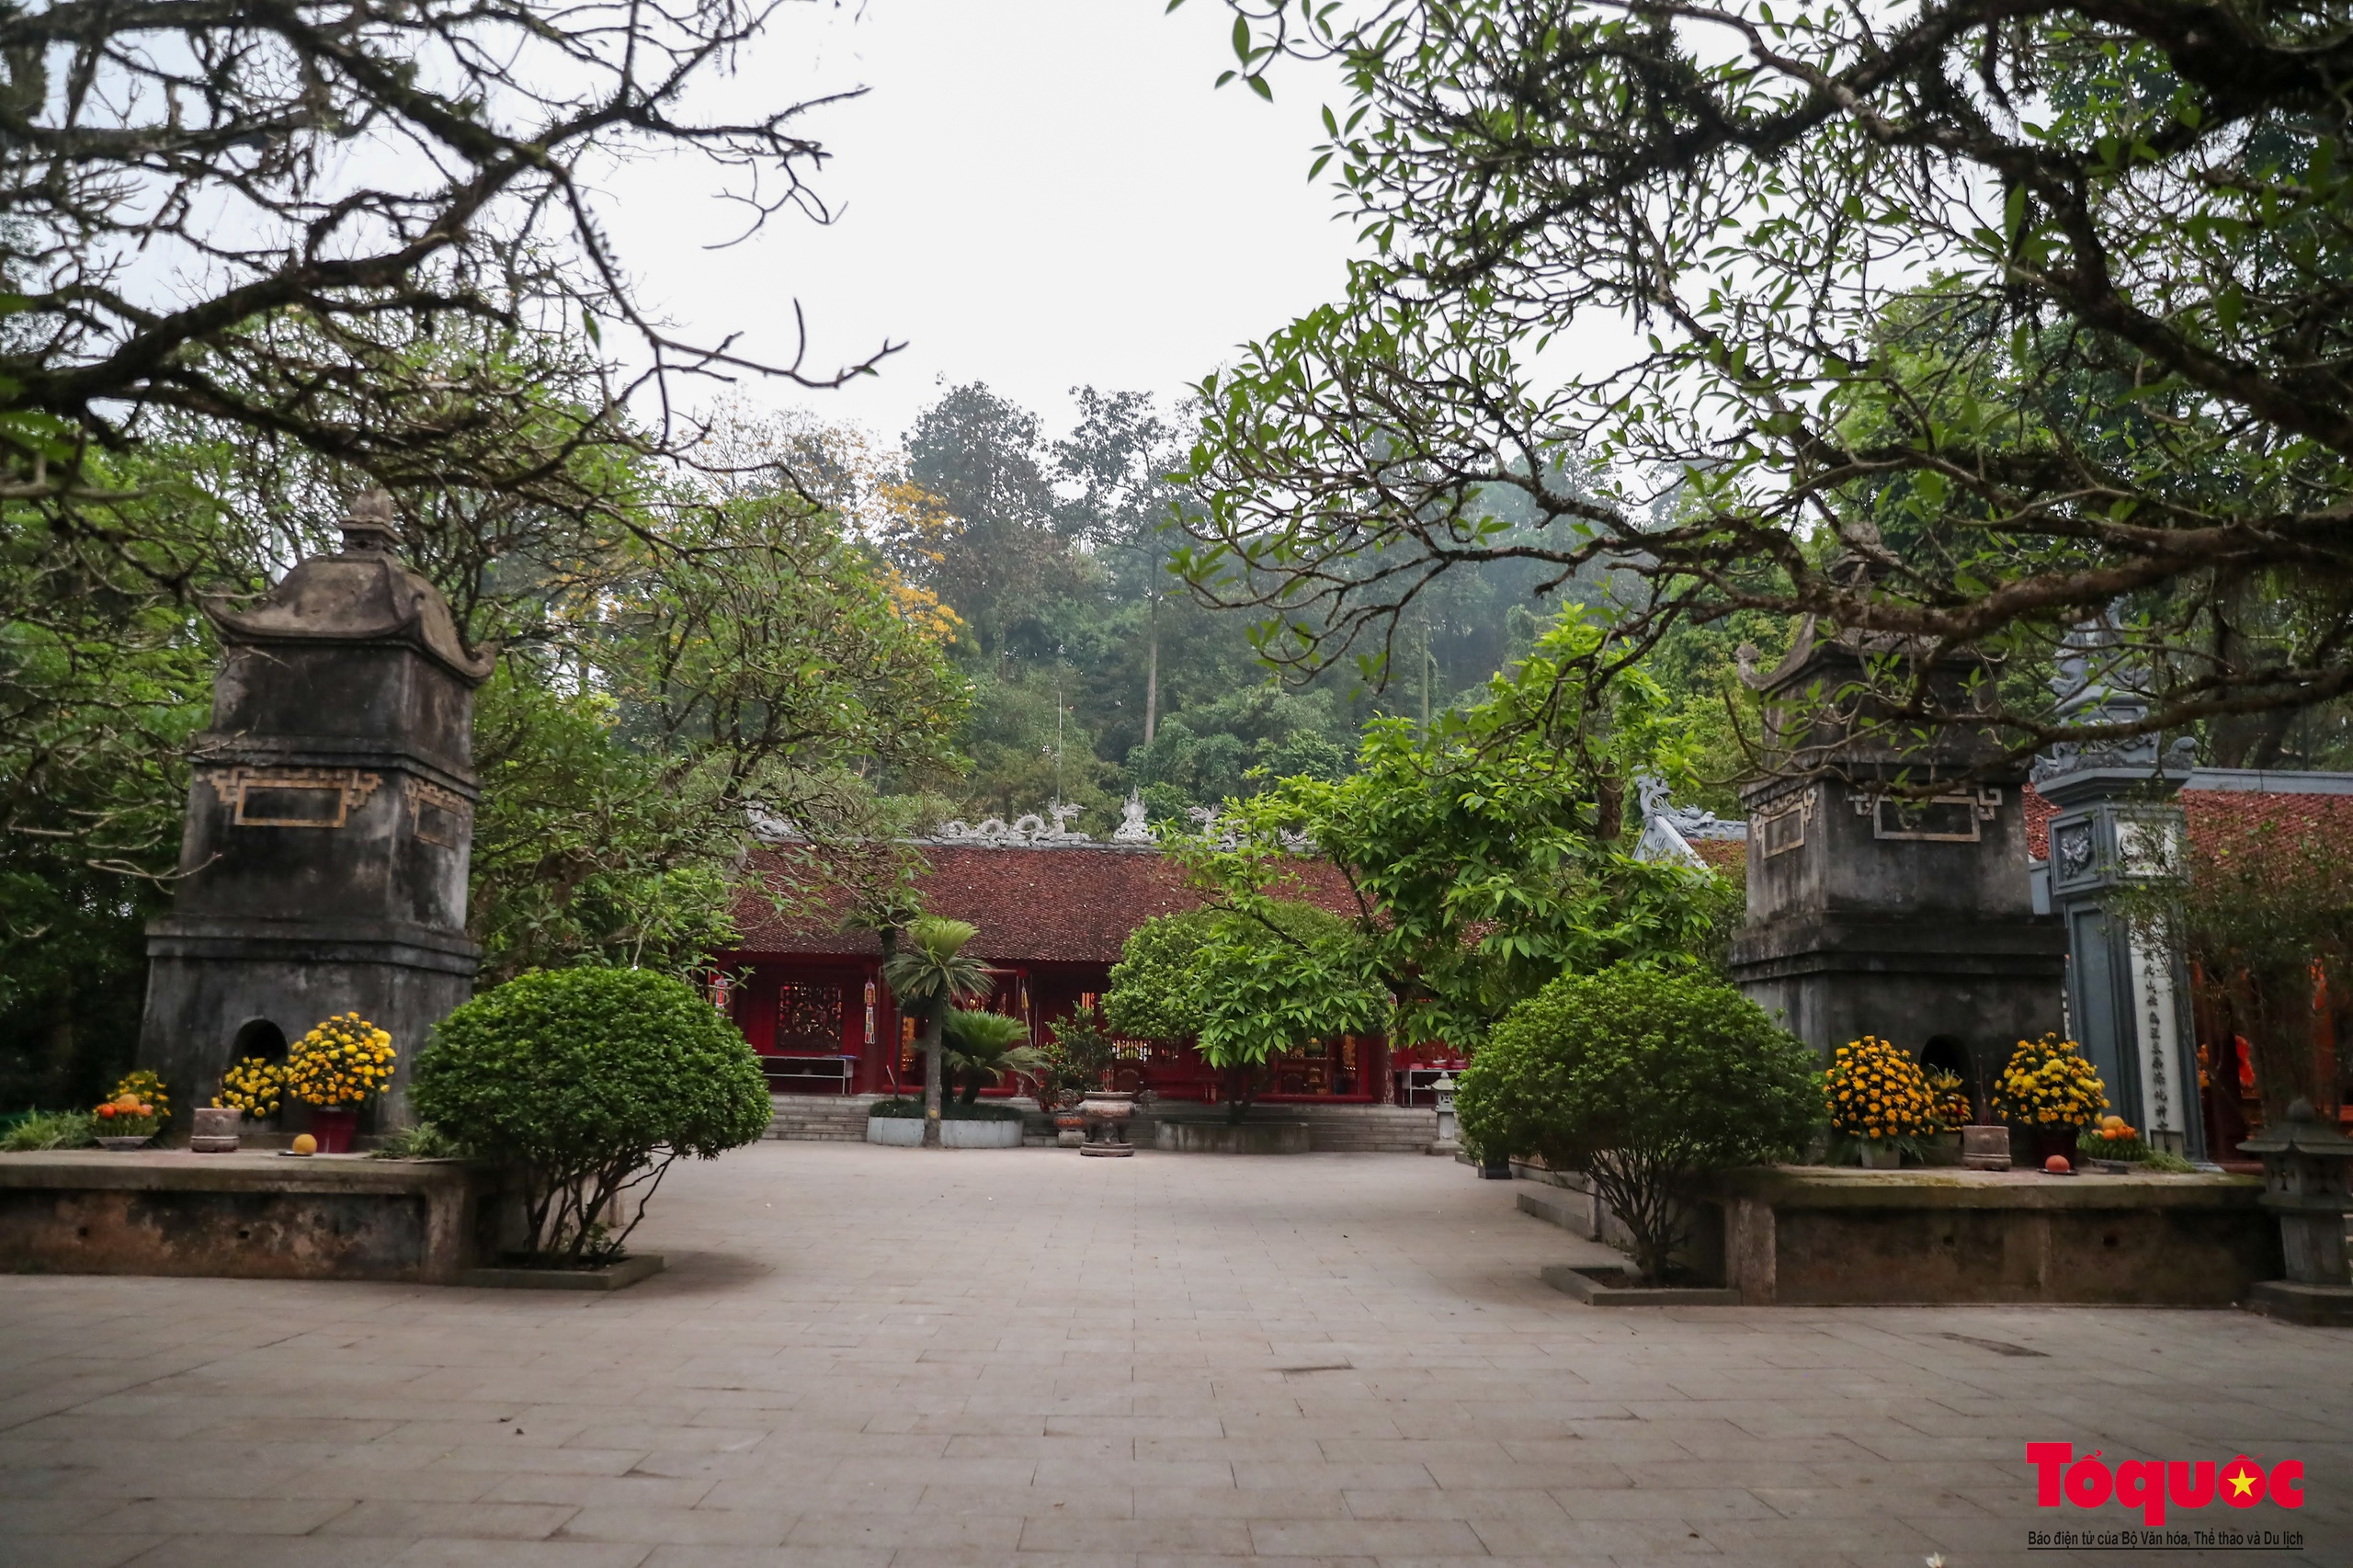 Chiêm ngưỡng cây vạn tuế gần ngàn năm tuổi - Báu vật xanh của Di tích lịch sử Đền Hùng - Ảnh 1.